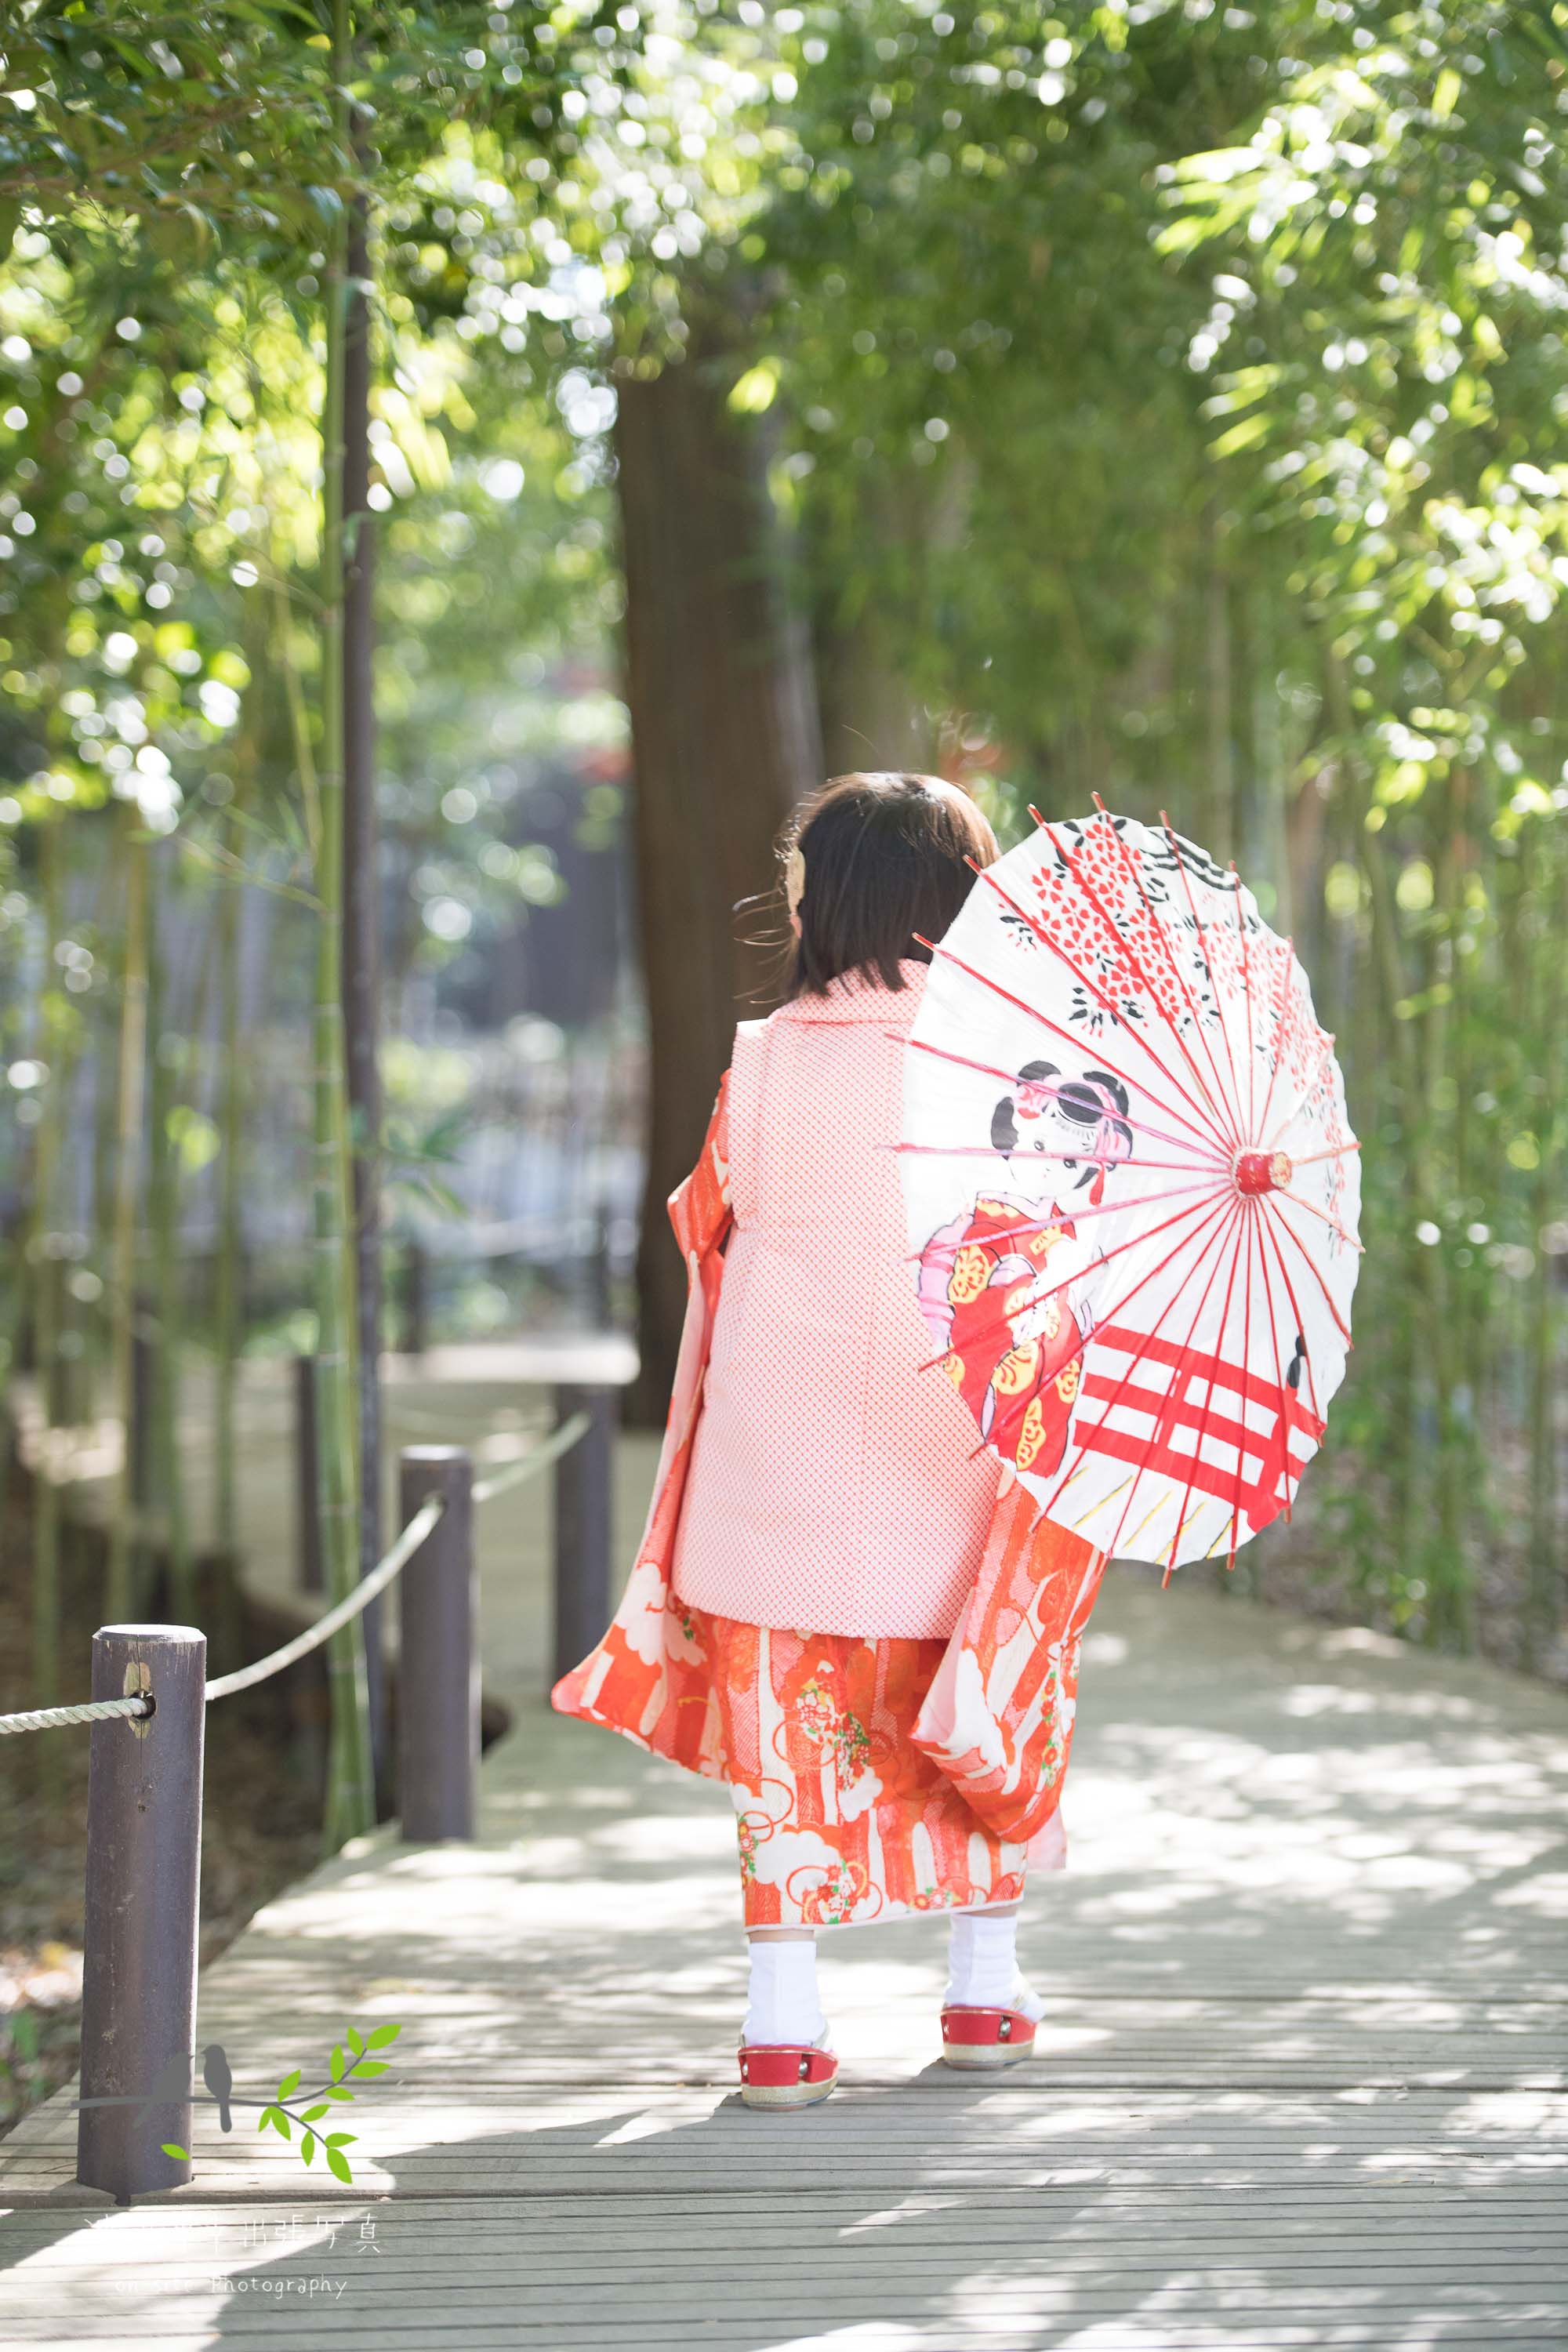 和傘をさすオレンジ色の着物姿の小さな女の子の後ろ姿